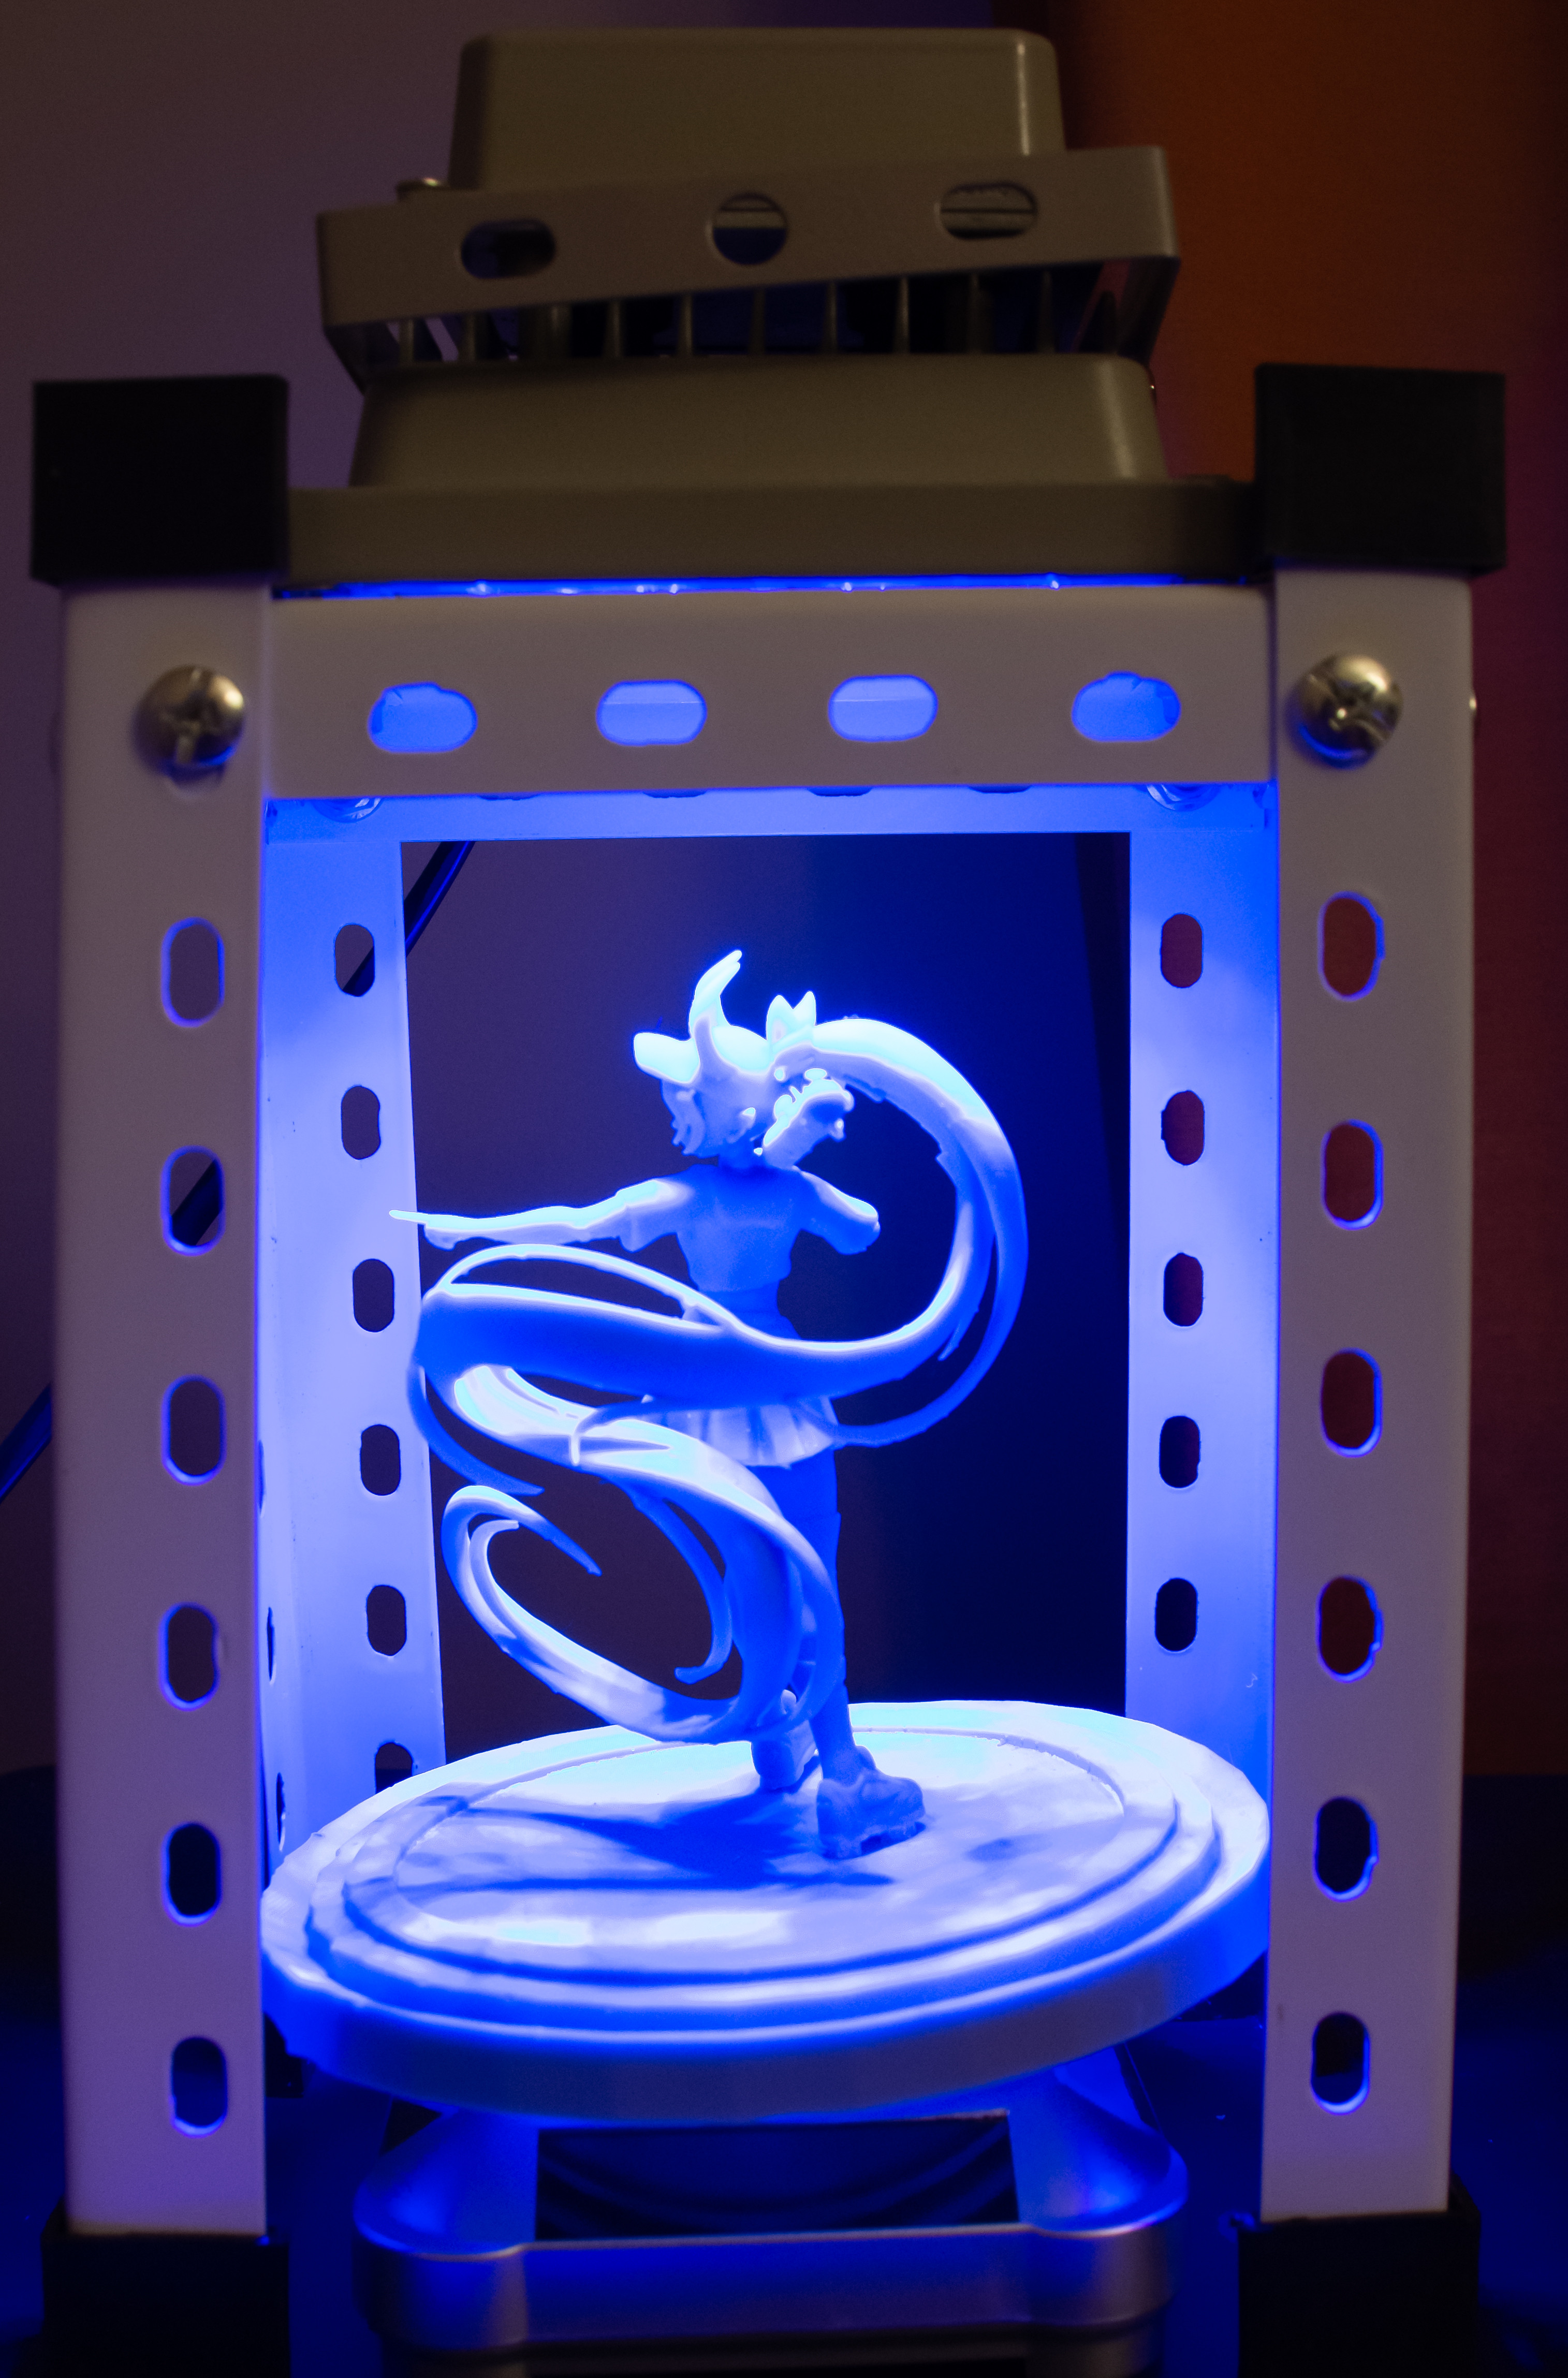 3D Print: Final version under UV Light